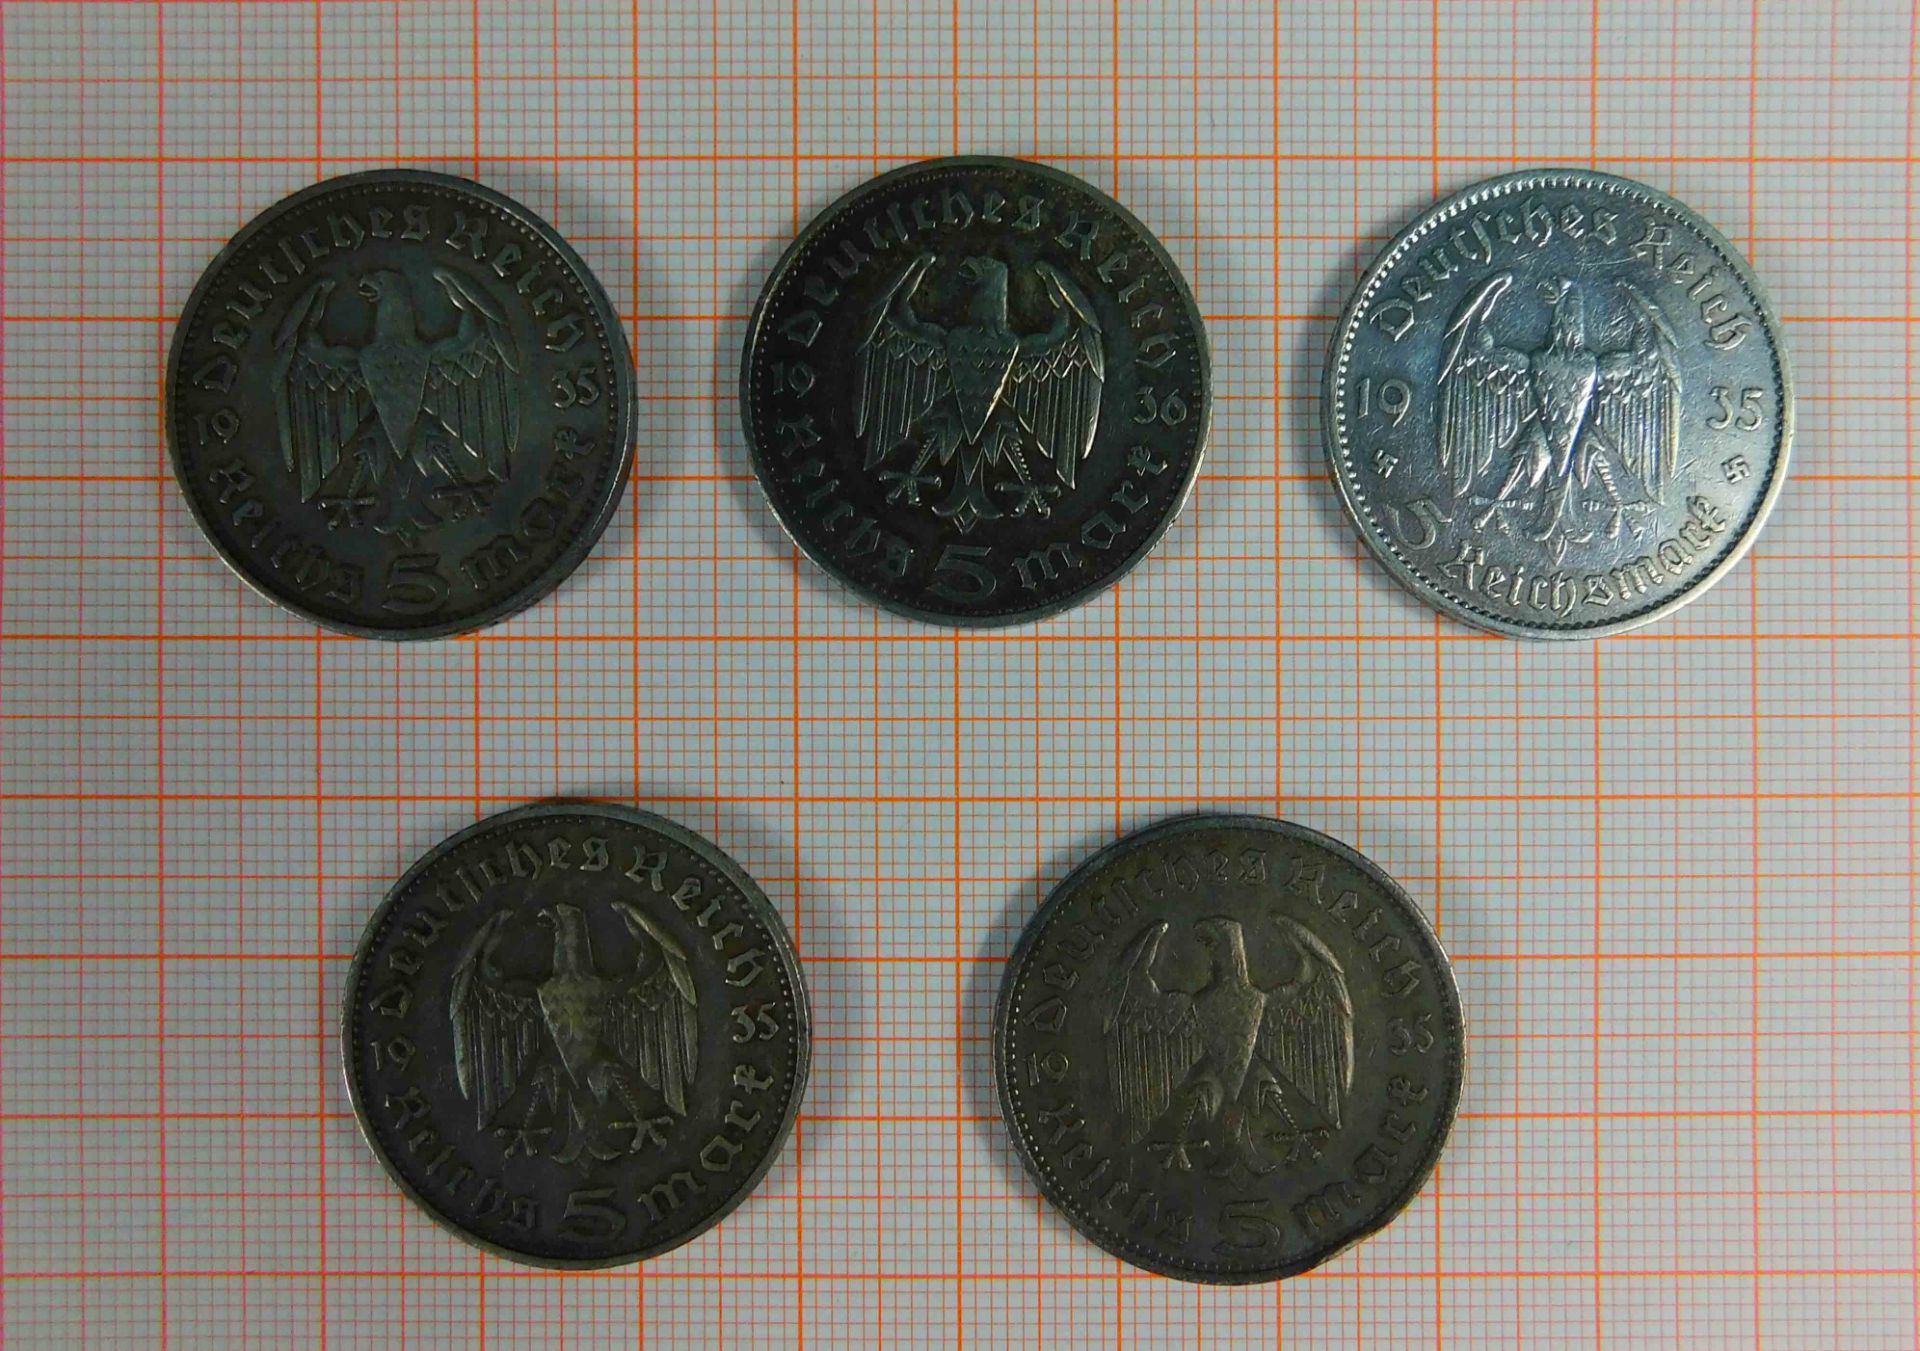 5 x 5 Reichsmark. Silbermünzen. Deutsches Reich. 1935. 1936. - Image 8 of 10